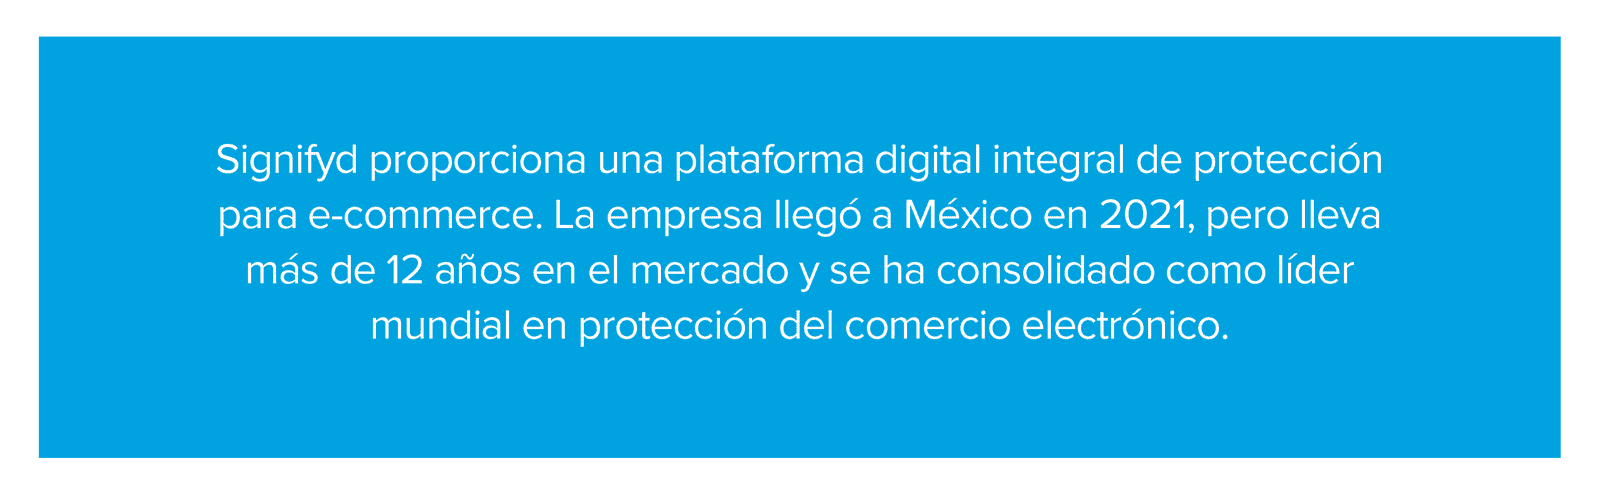 Signifyd proporciona una plataforma digital integral de protección para e-commerce.